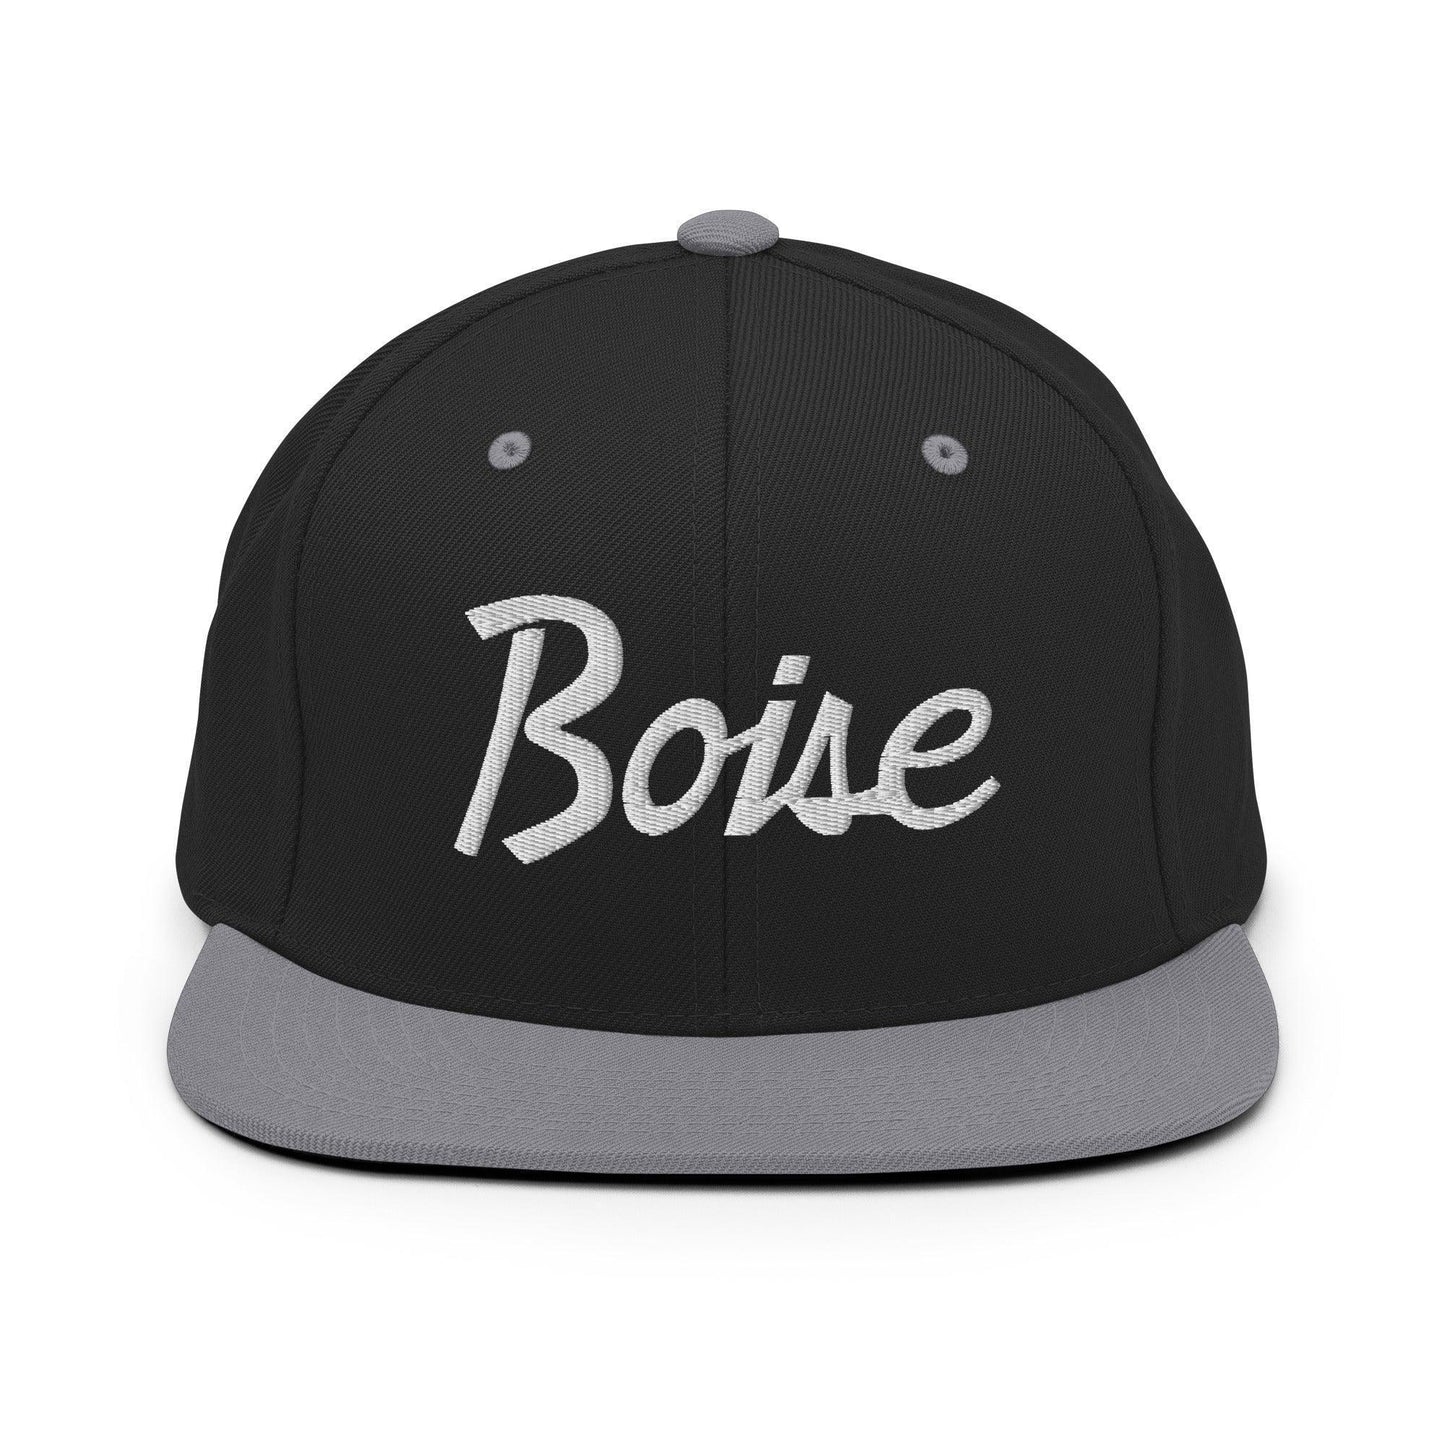 Boise Script Snapback Hat Black Silver